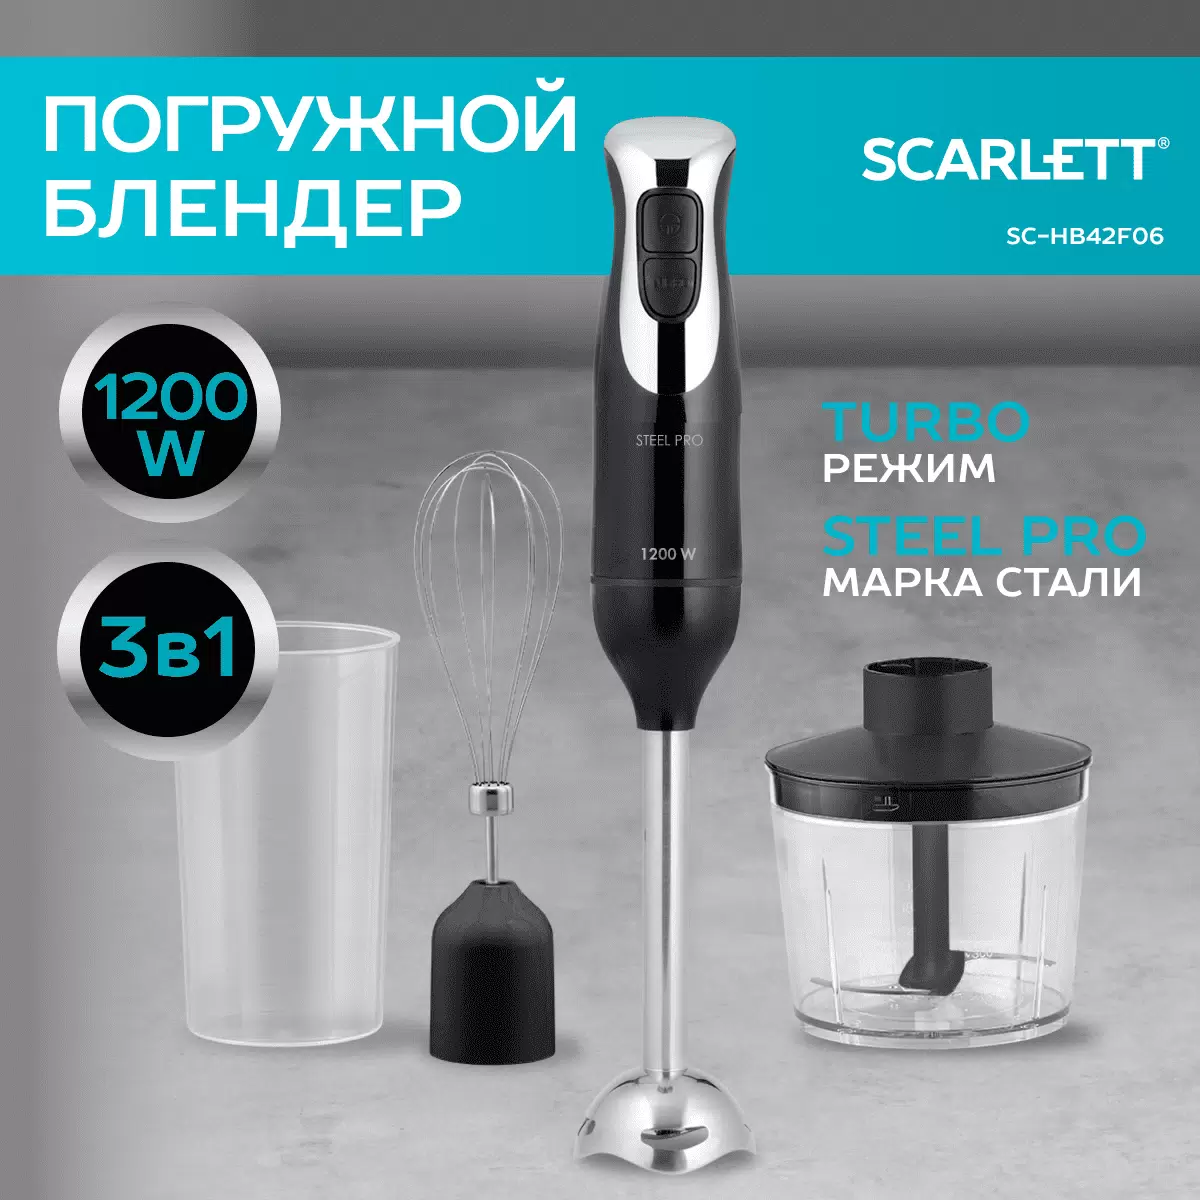 Погружной блендер Scarlett SC-HB42F26 серебристый, черный - VLARNIKA в Донецке